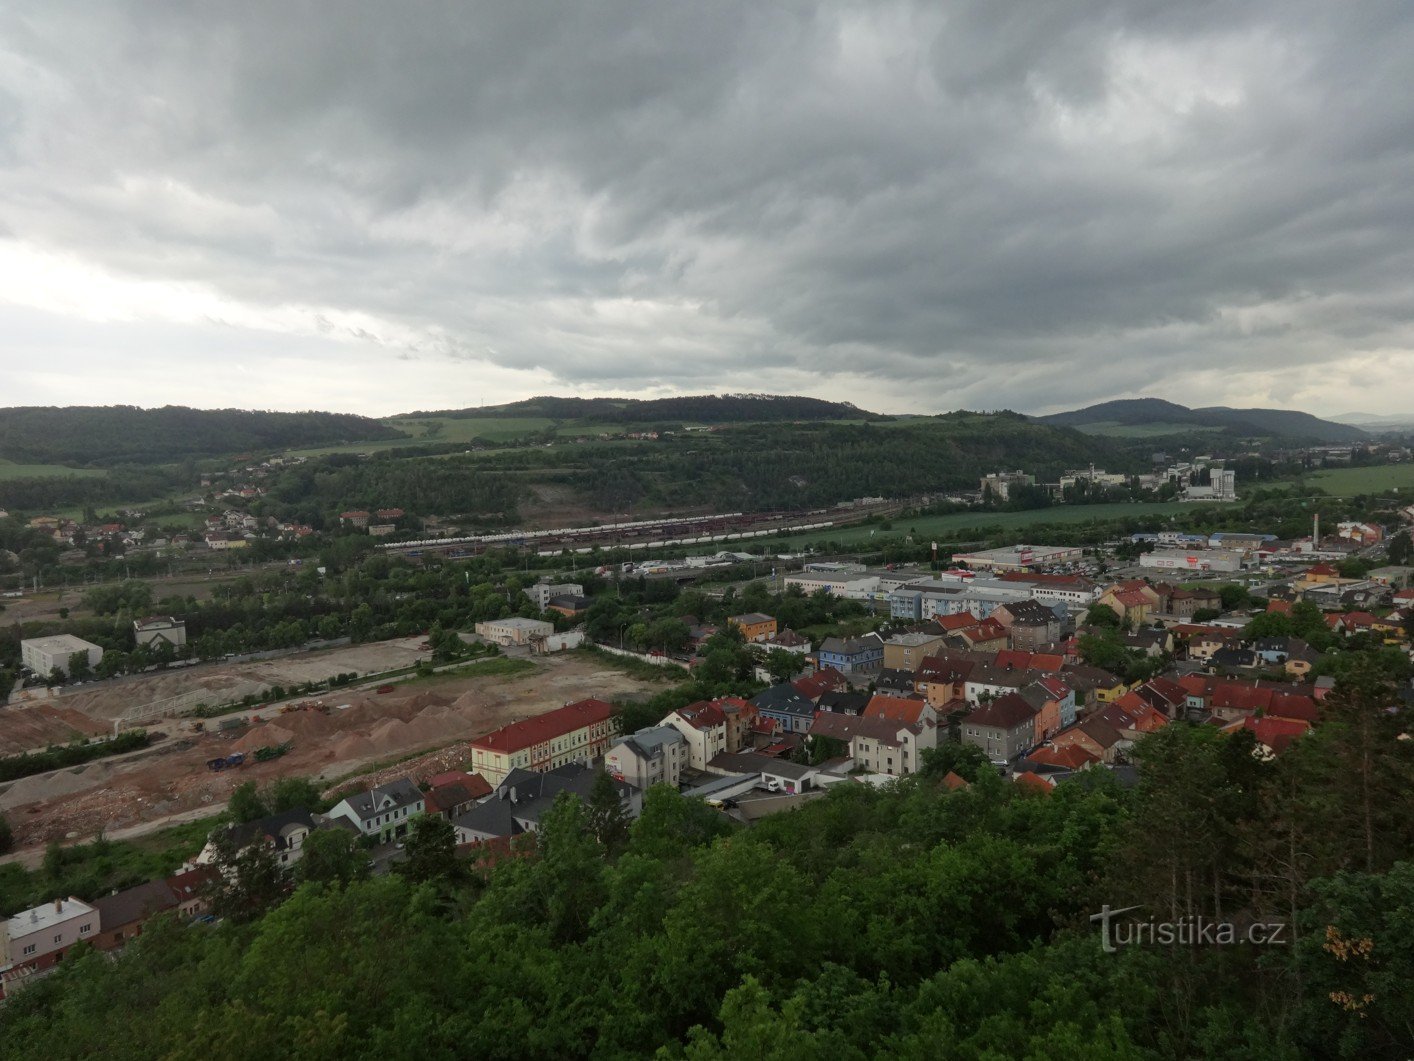 Aussichtsturm aus Beton auf Městská hora in Beroun